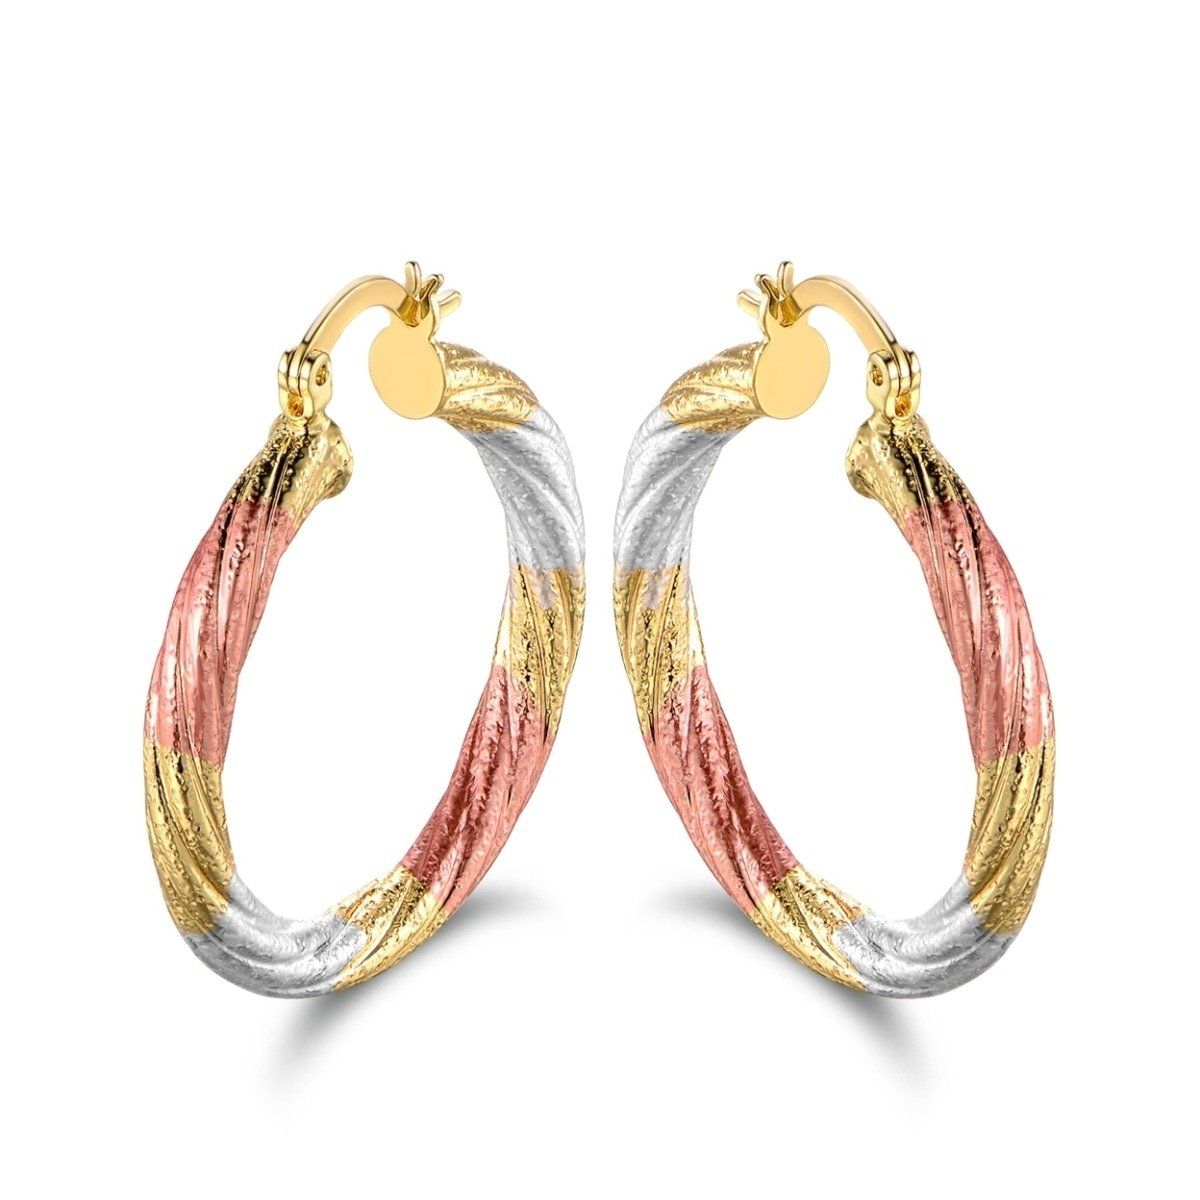 Multi Gold Hoop Earrings - Assorted Styles